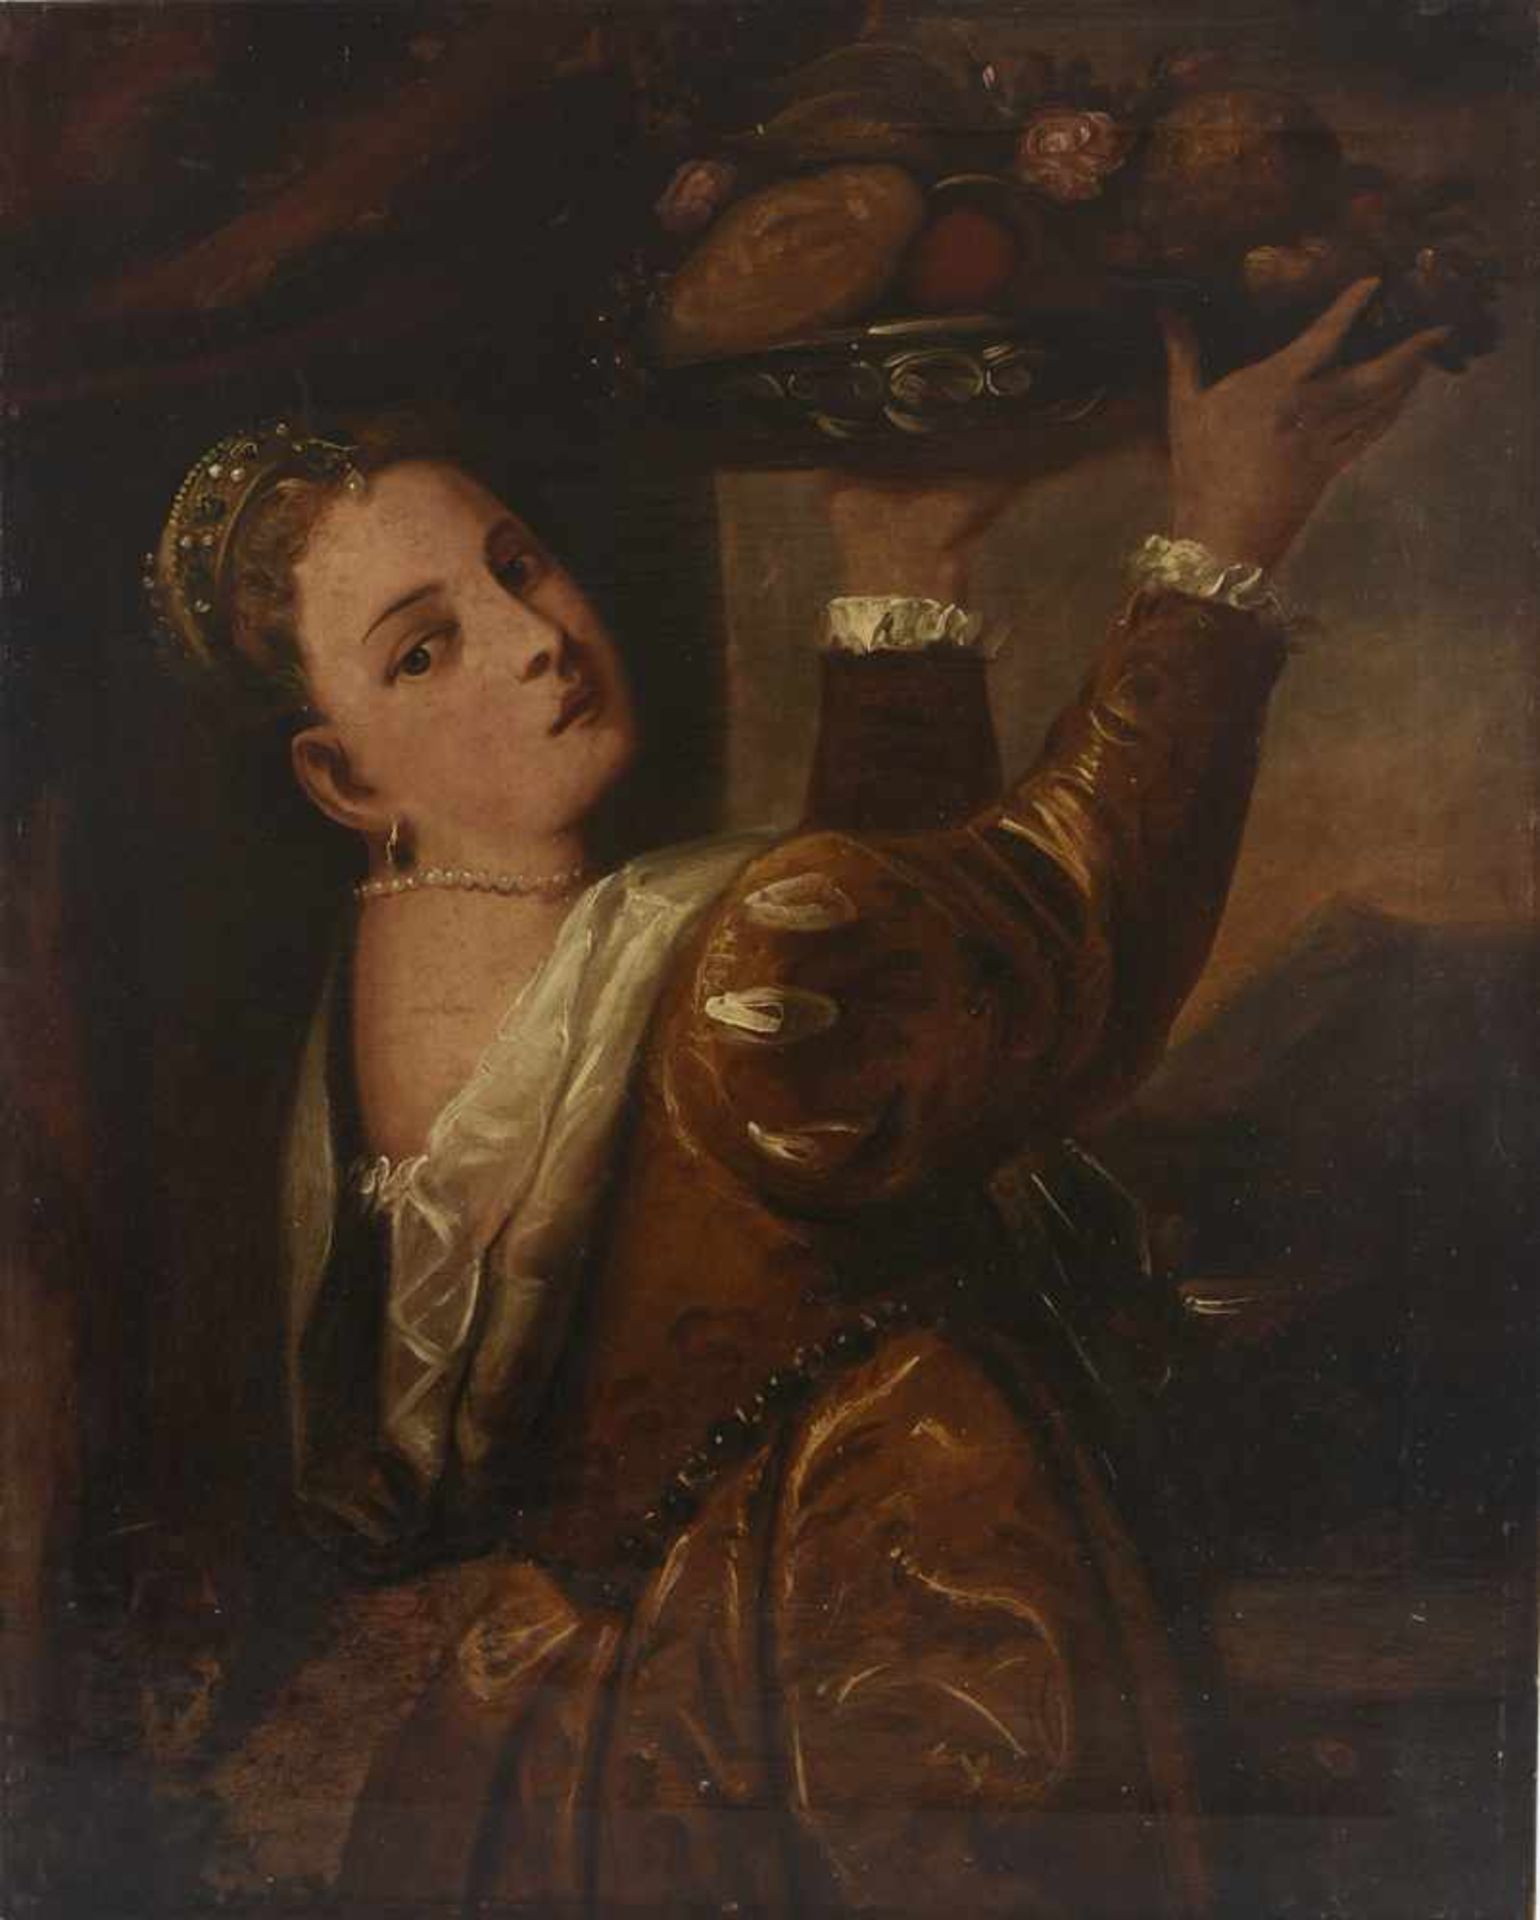 TIZIAN(O VECELLIO). Nach. "Mädchen mit Fruchtschale",Öl auf Leinwand nach Tizians Originalgemälde um